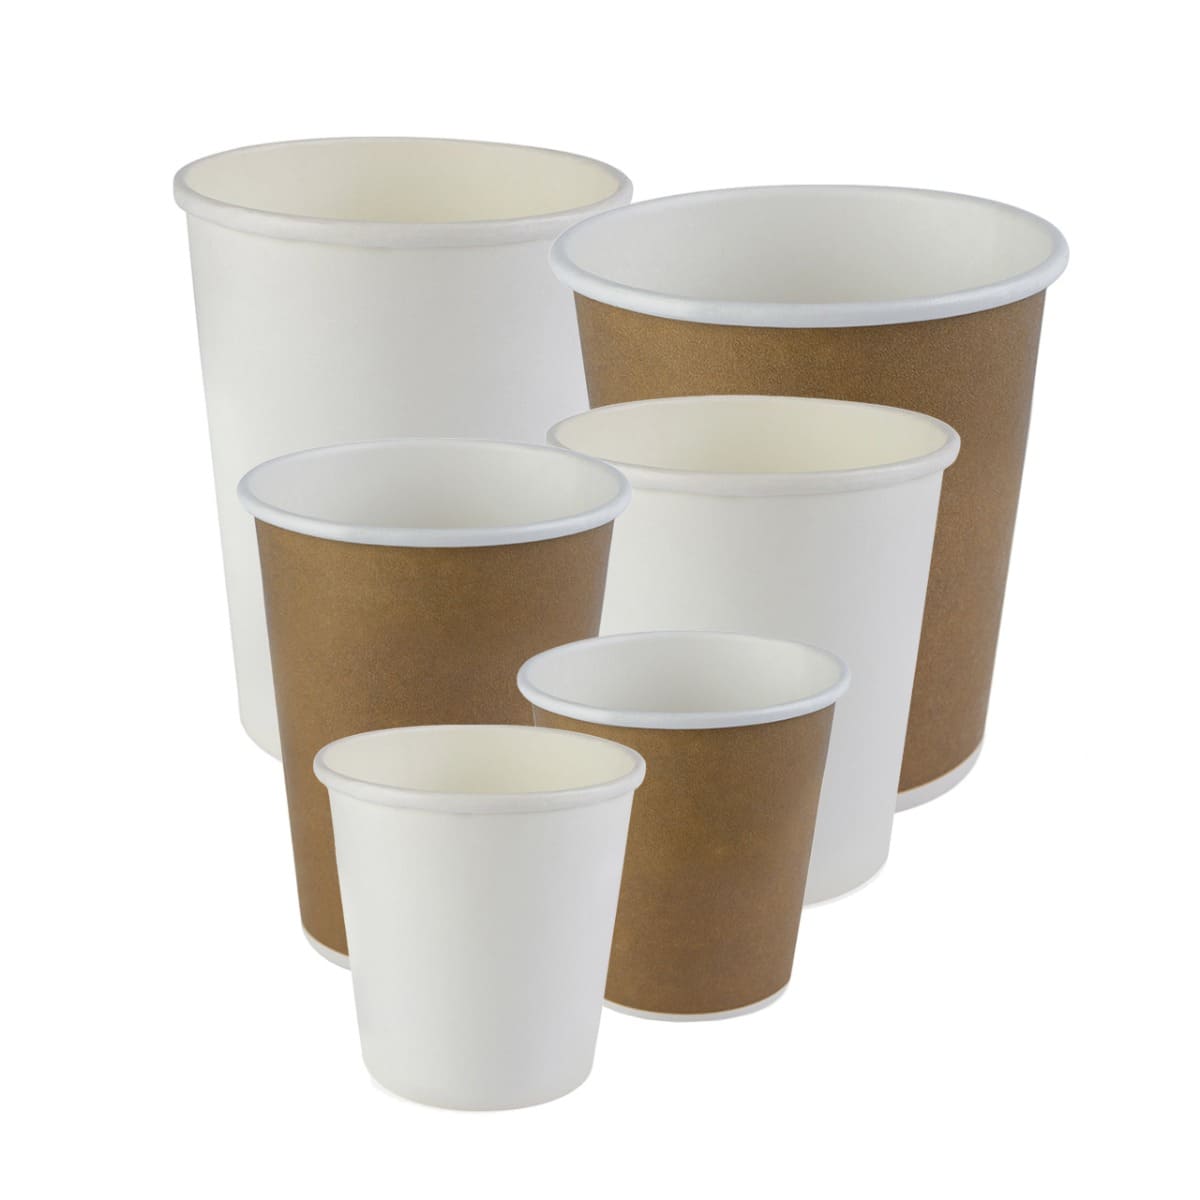 Bicchieri di carta per caffè riciclabili - Acquista online